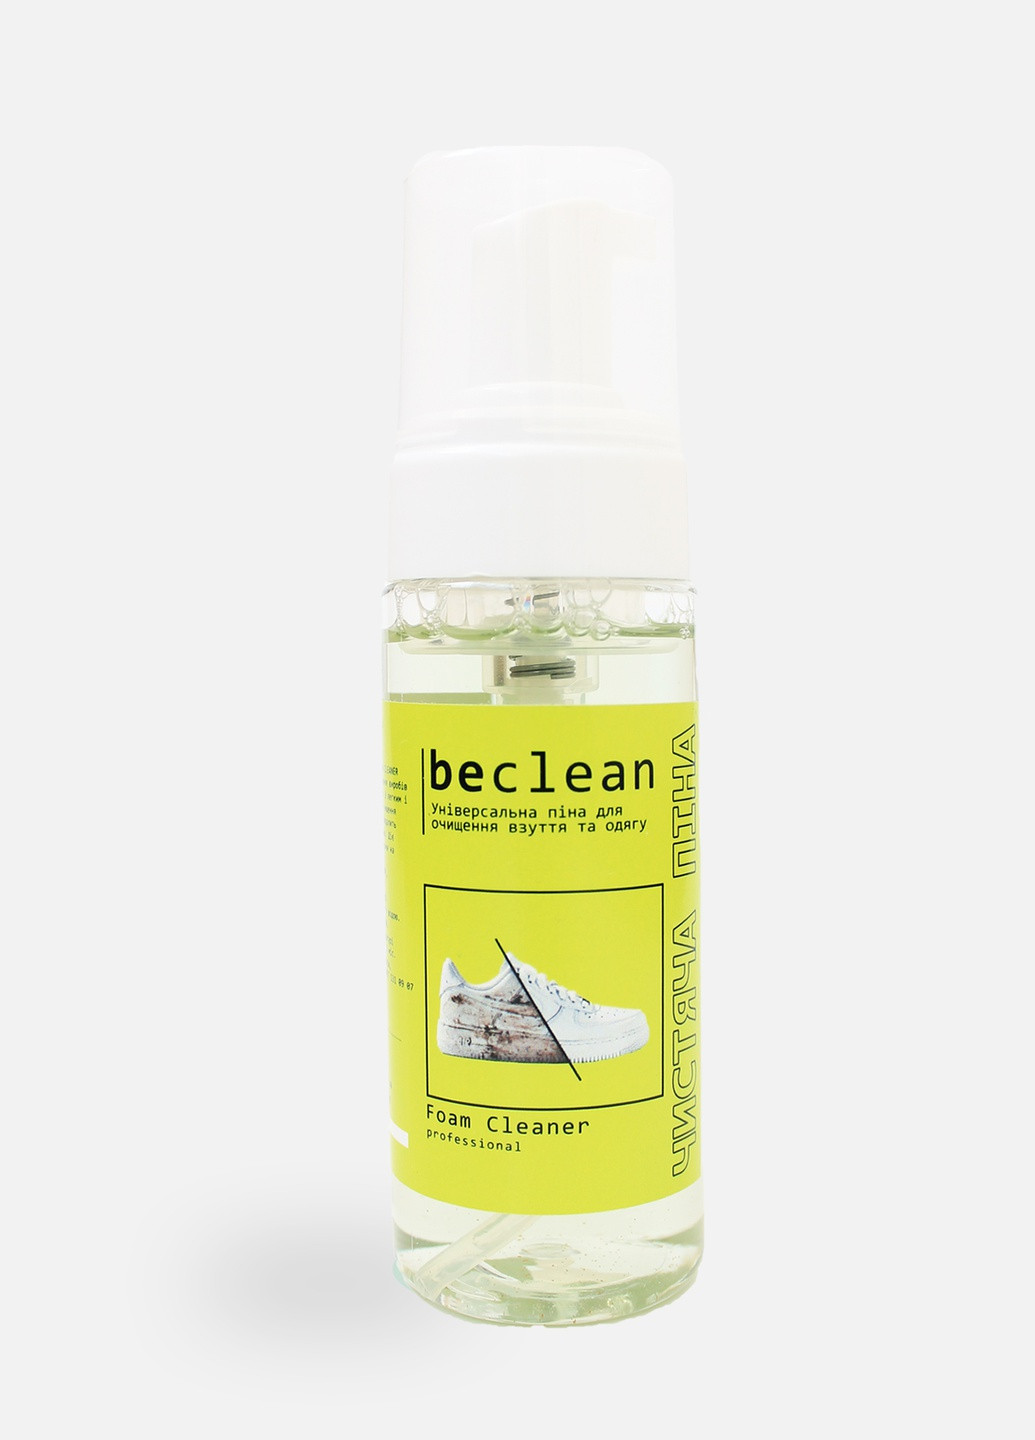 FOAM CLEANER - Профессиональная чистящая пена для обуви и одежды Beclean